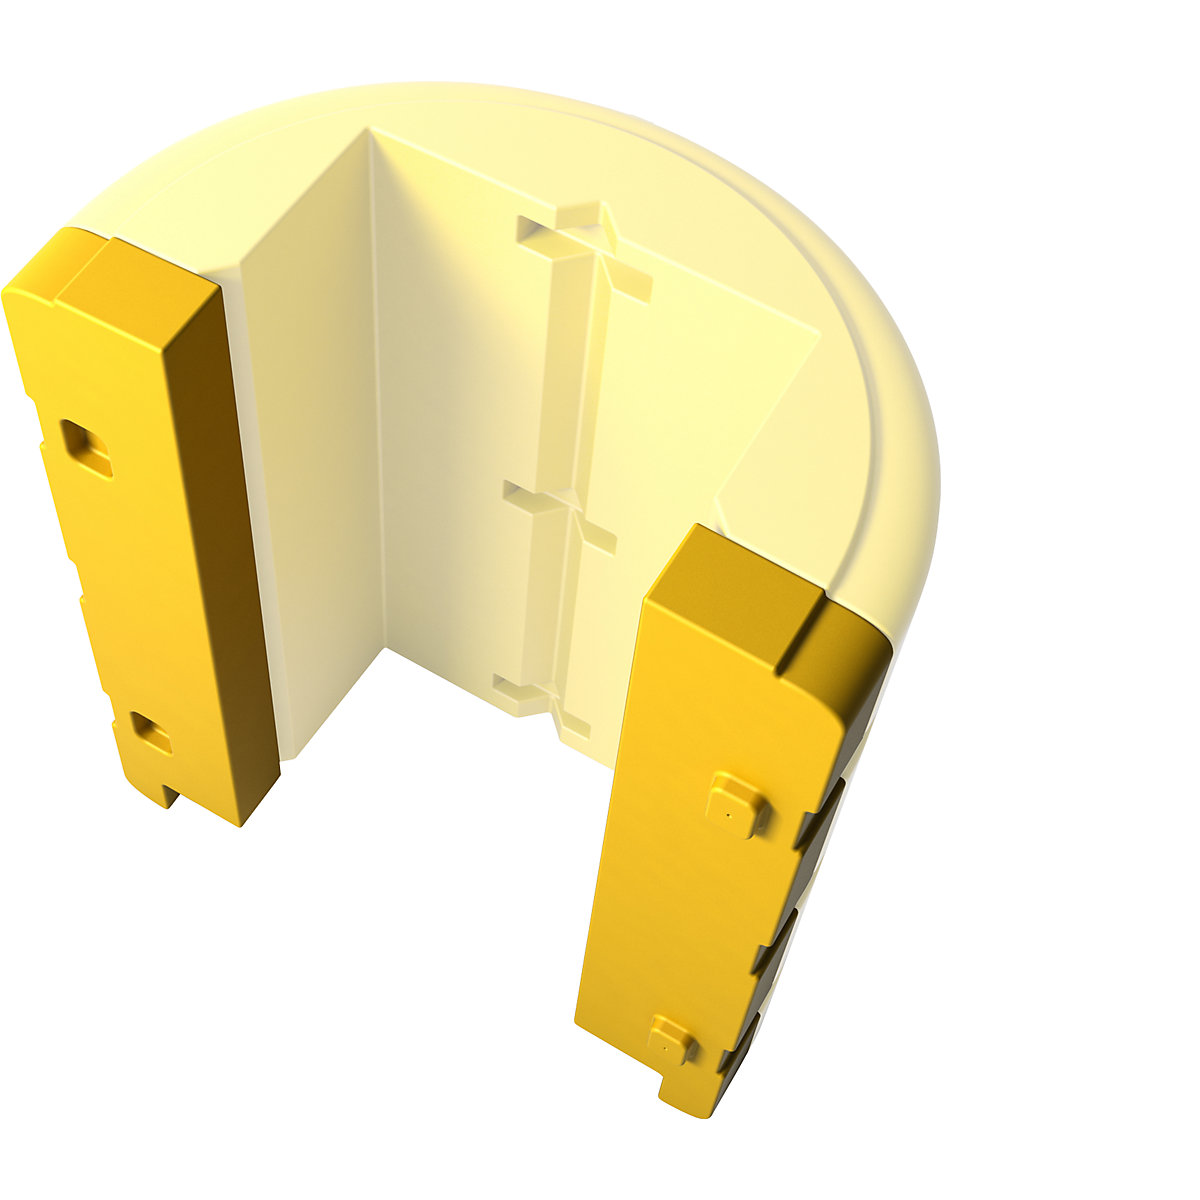 Erweiterungsstück für Säulenschutz, Höhe 1100 mm, gelb, für Größe 400 – 600 mm